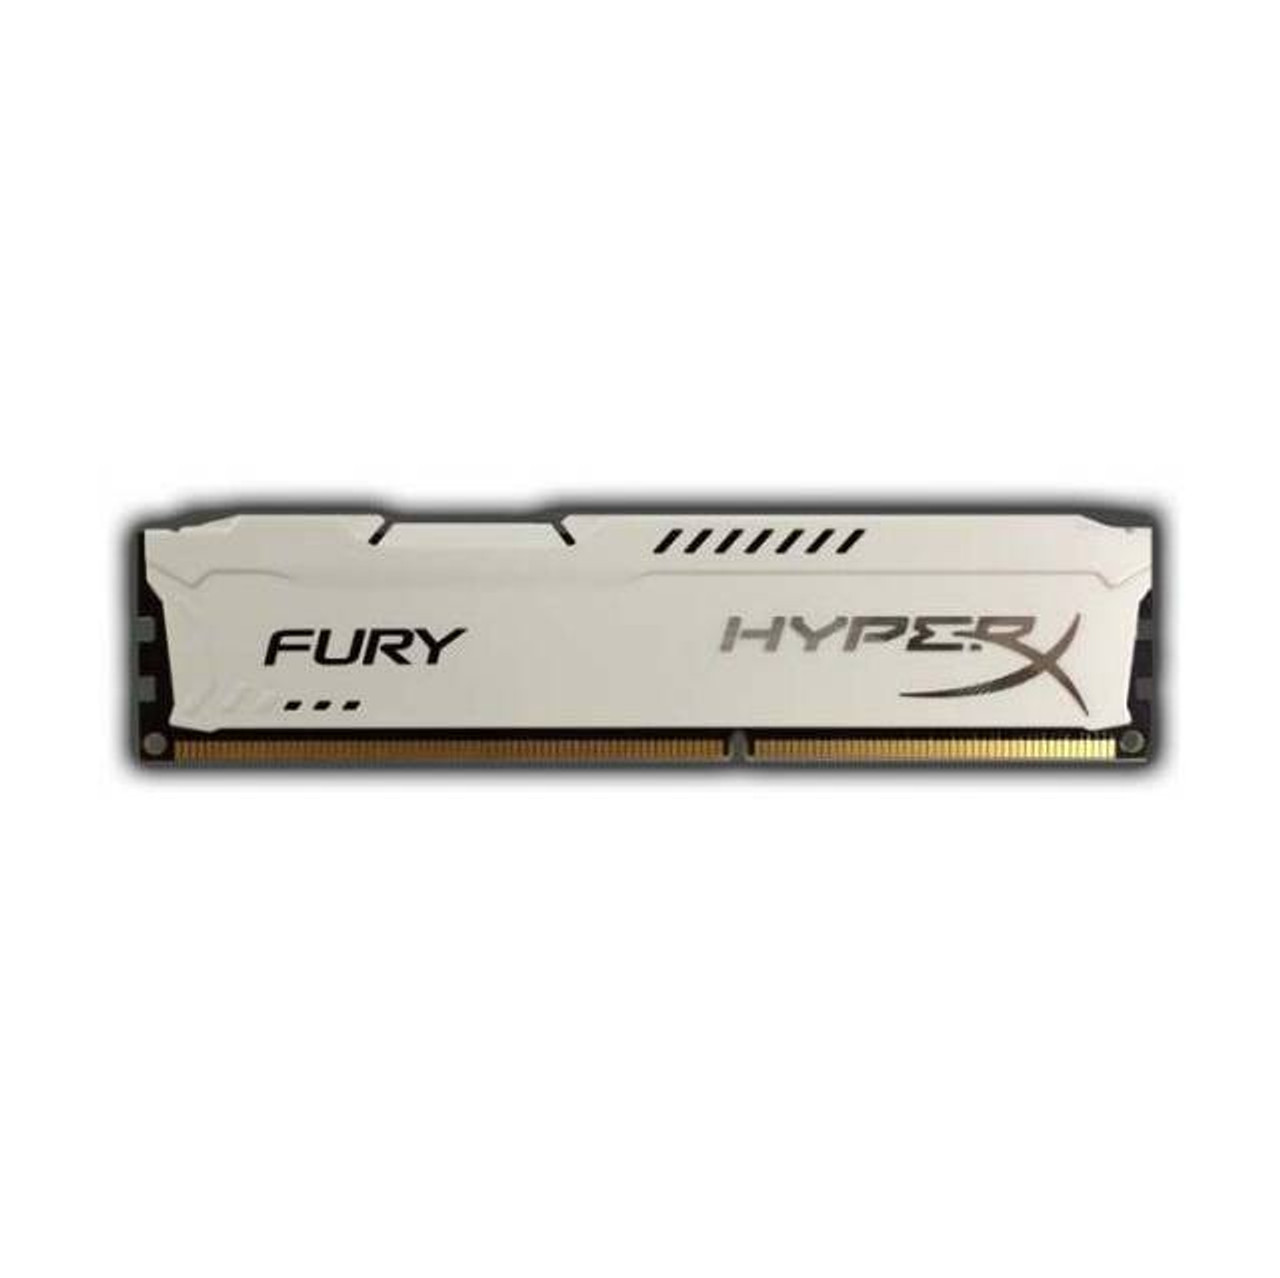 Kingston HyperX FURY White HX316C10FW/8 DDR3-1600 8GB/1Gx64 CL10 Memory